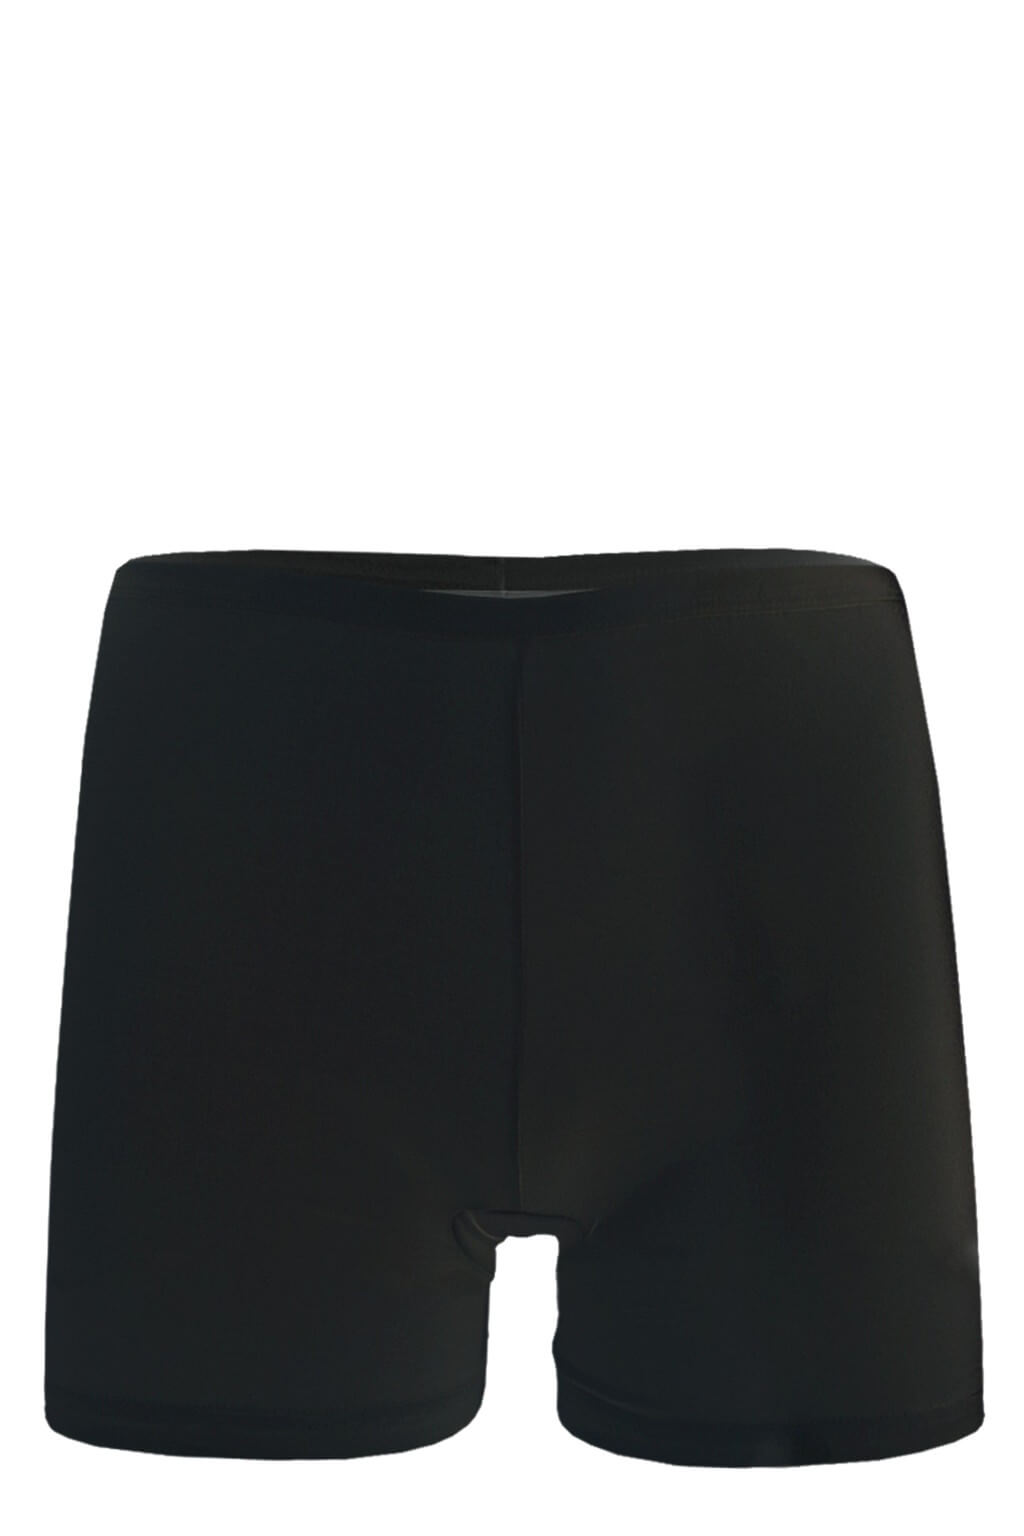 Delora nohavičkové kalhotky XL černá